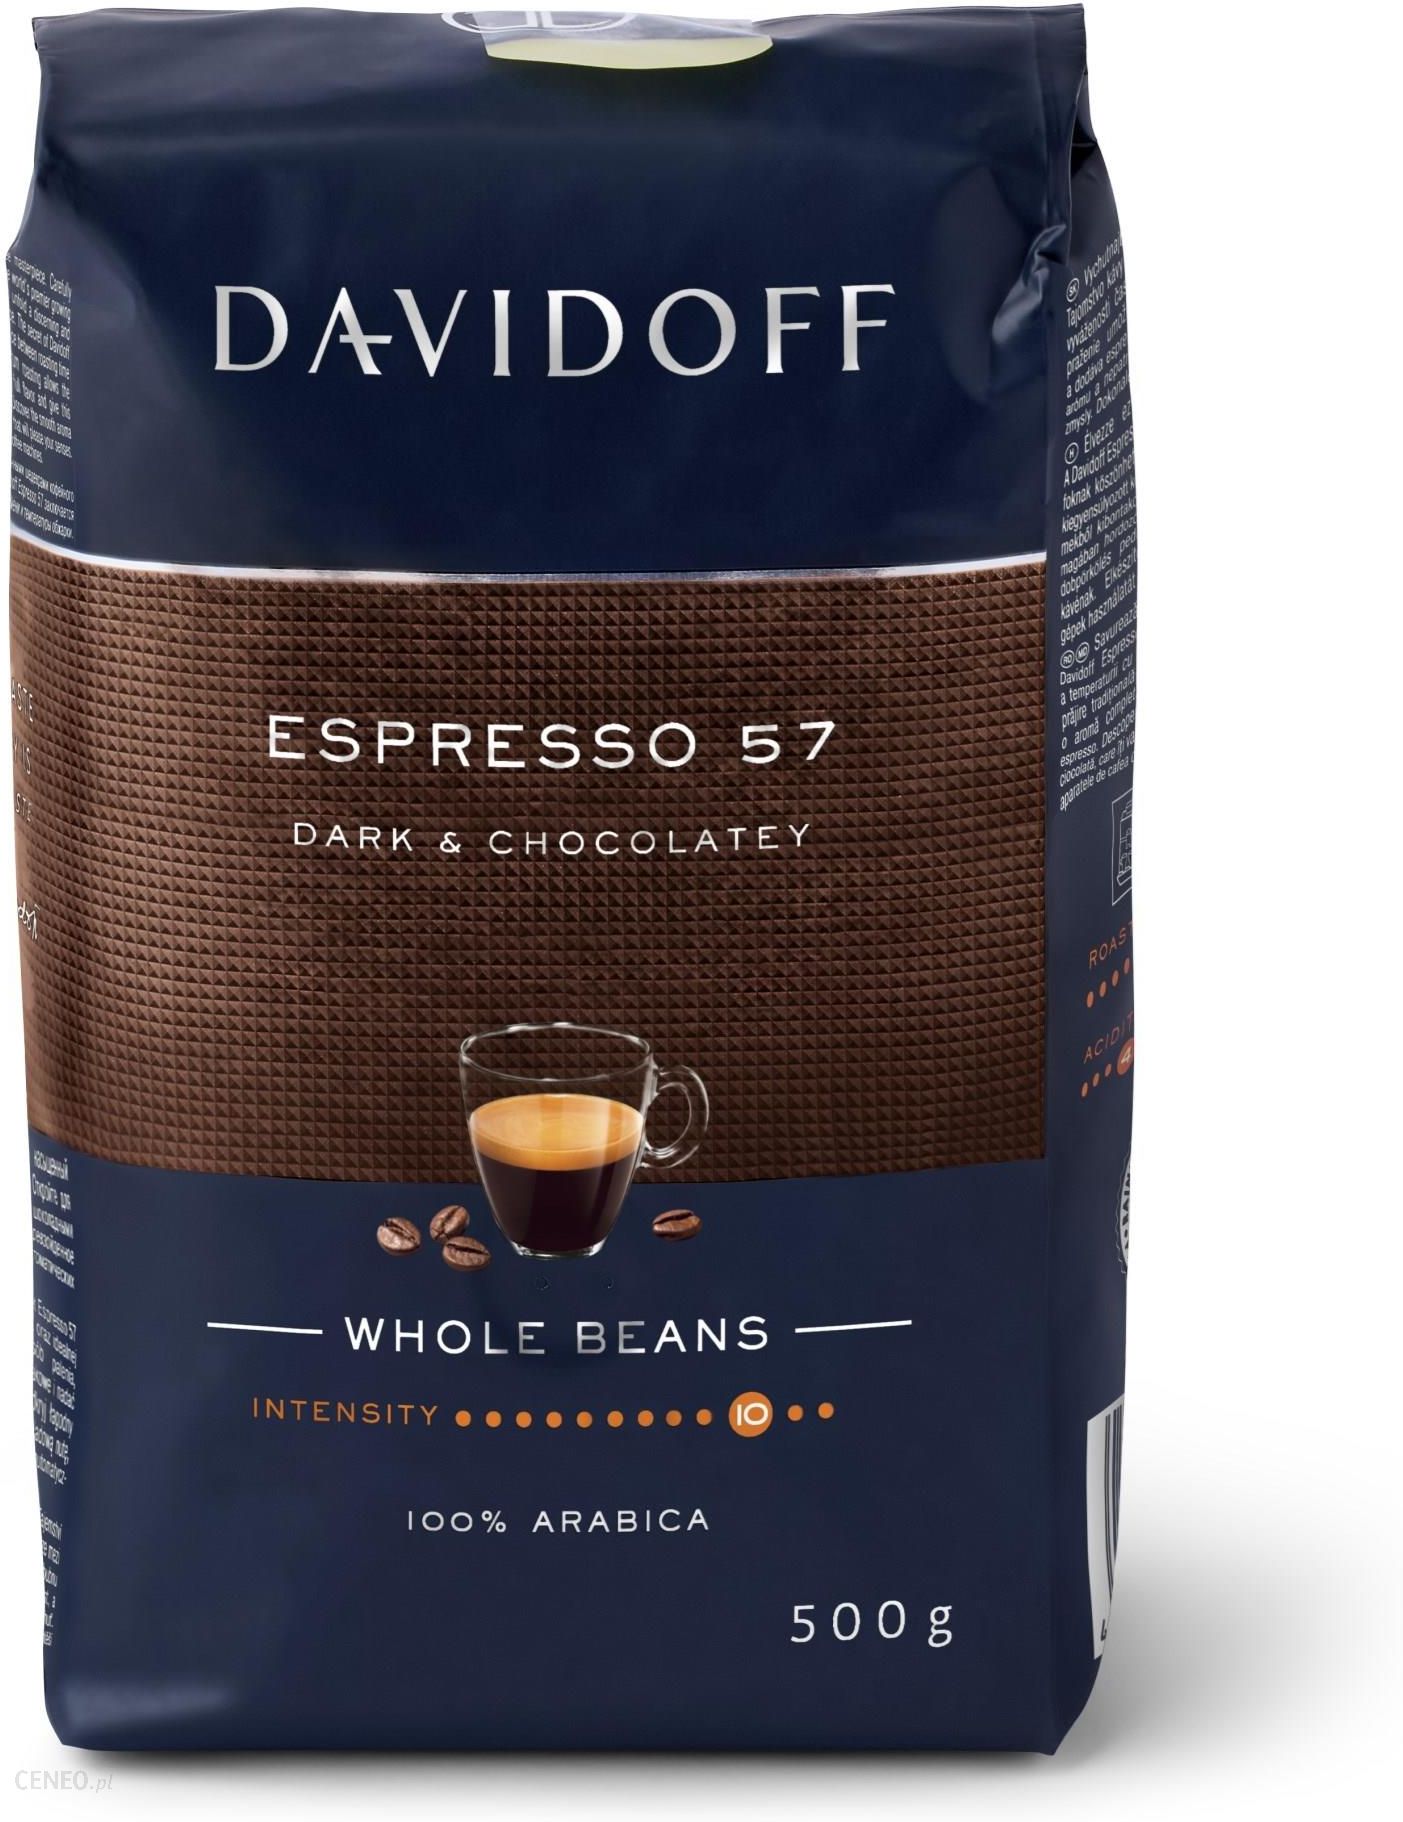 Davidoff Espresso kawa ziarnista 500G